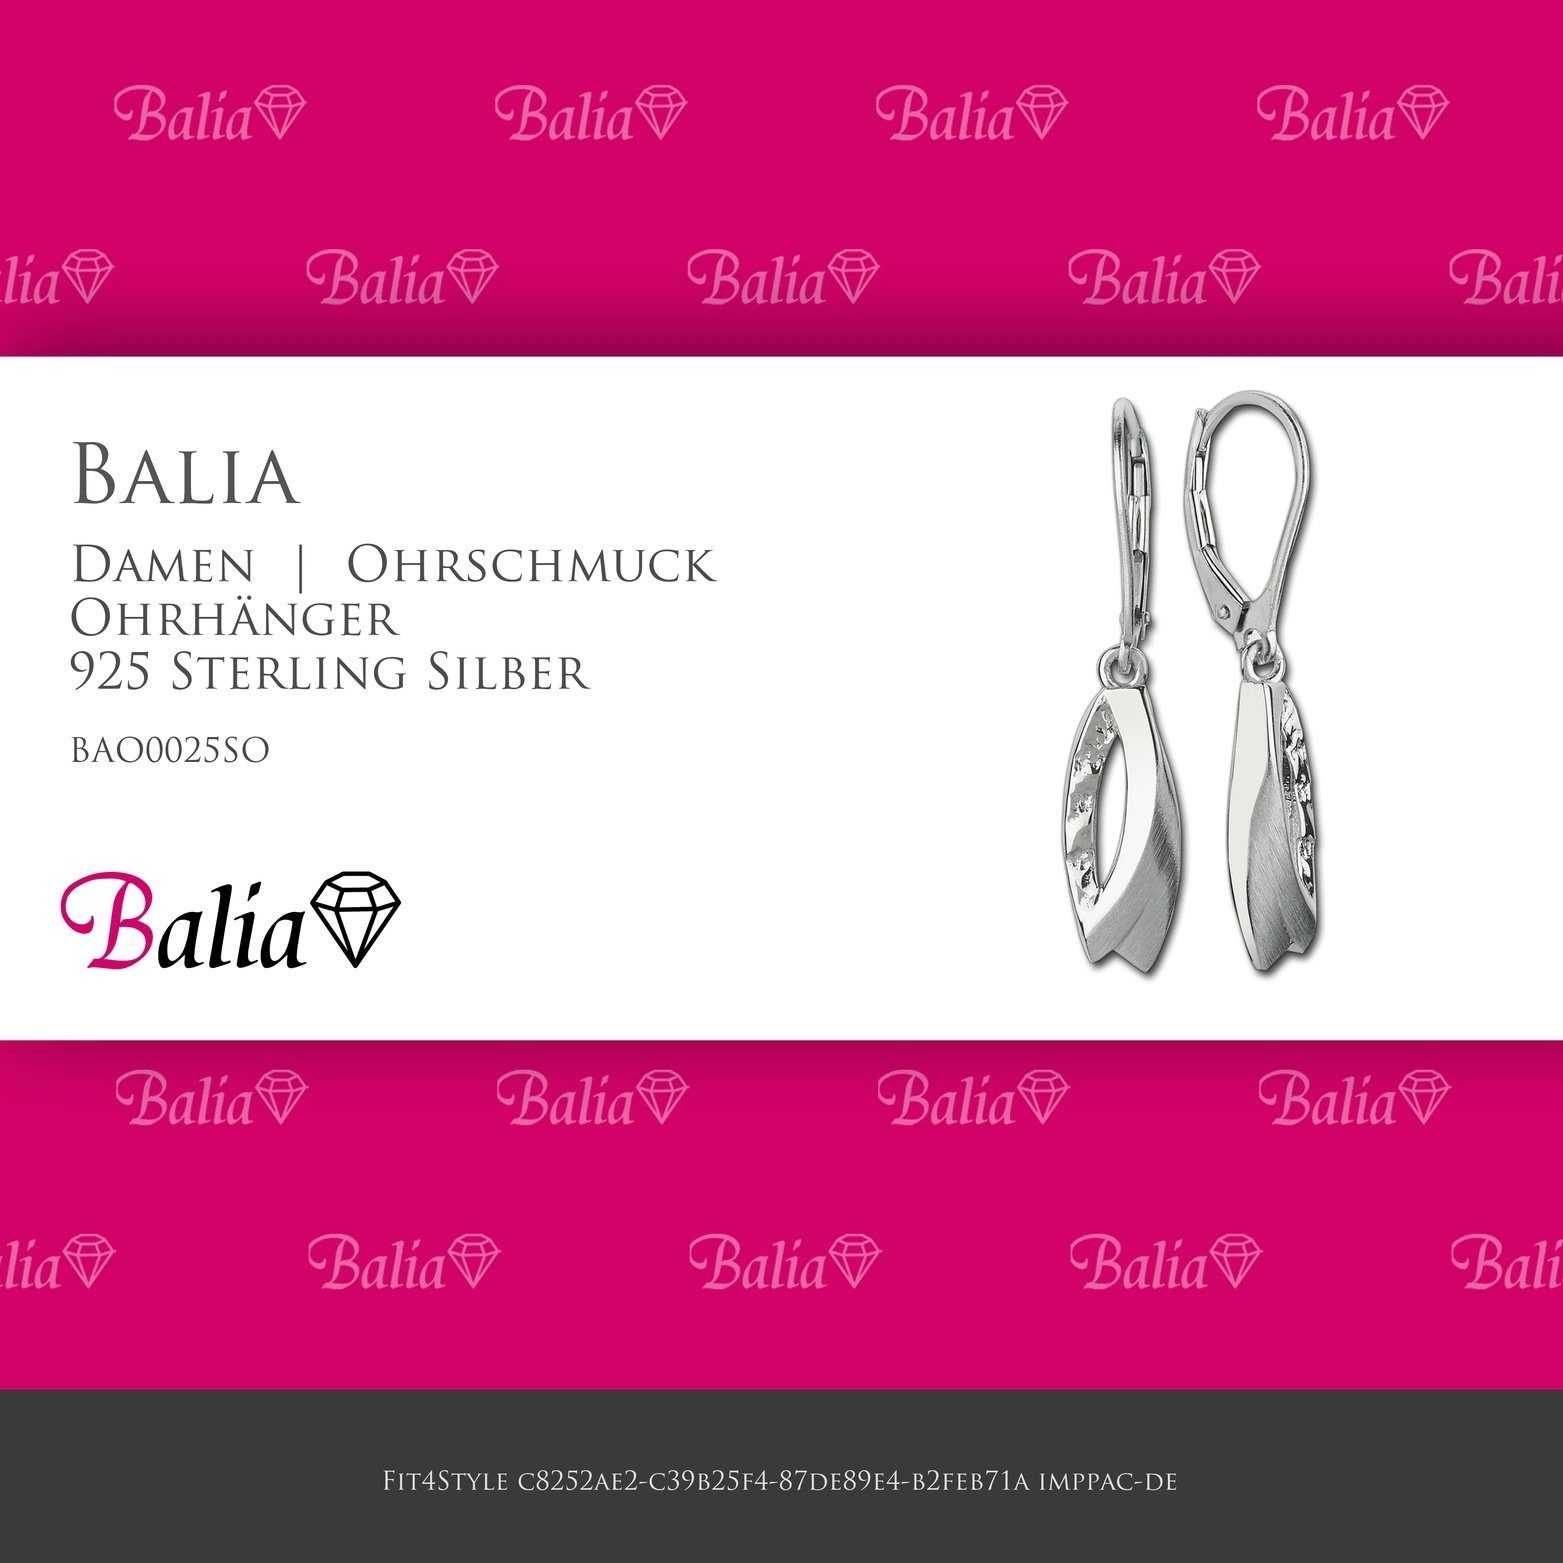 Balia Paar Ohrhänger Balia Länge Sterling aus Ohrringe 3,5cm Ohrhänger Blätter Damen (Ohrhänger), poliert Silber, matt Damen ca. 925